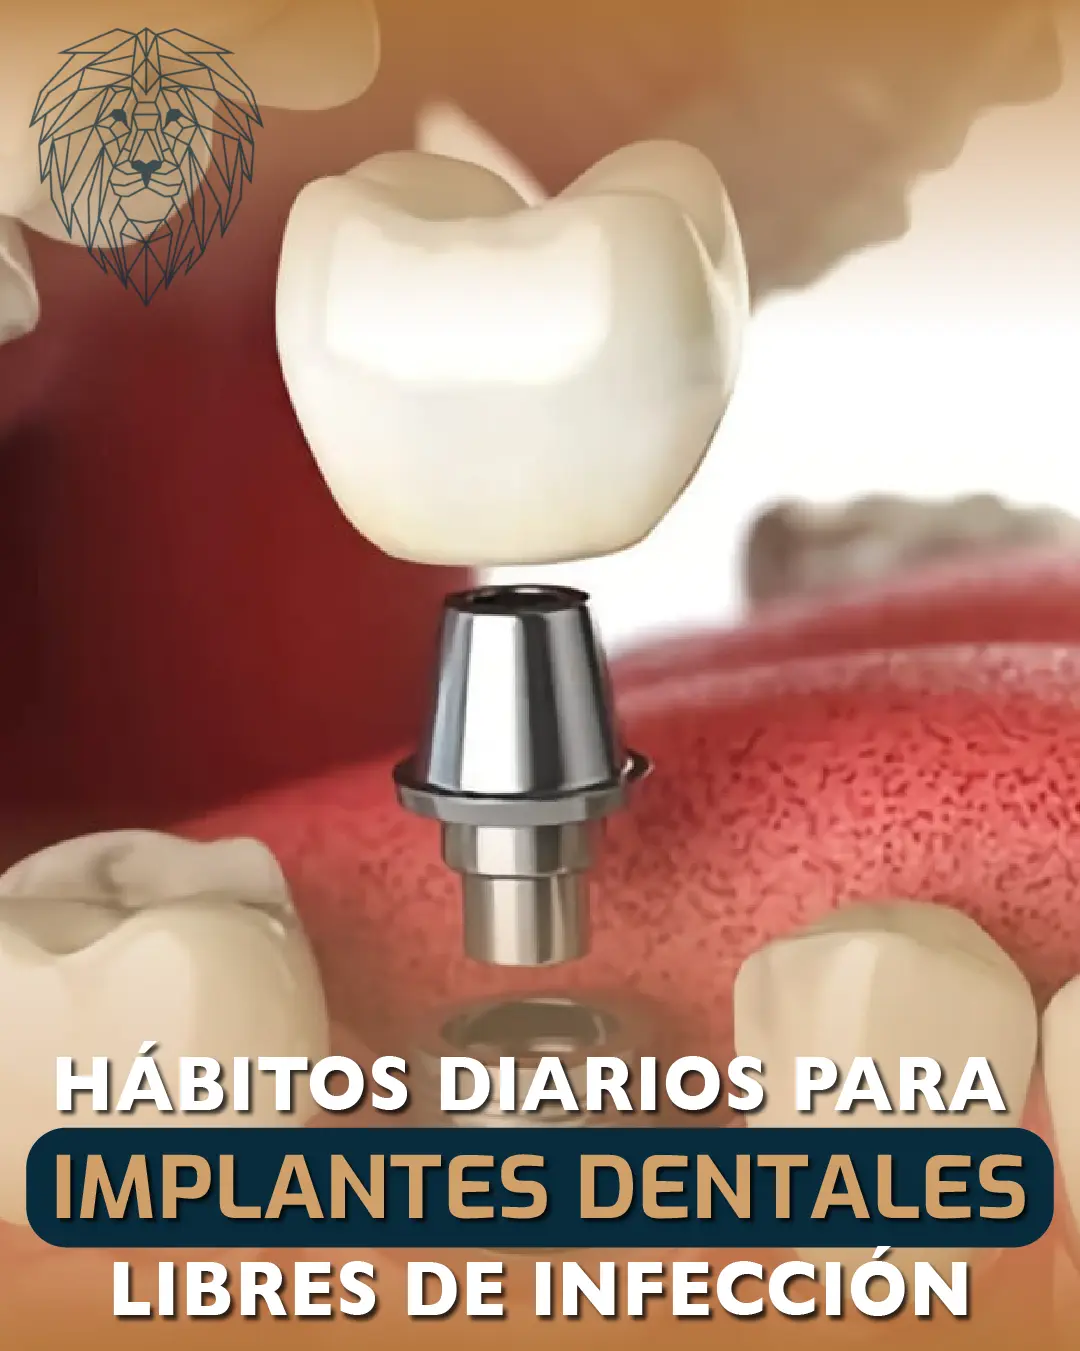 Hábitos Diarios para Implantes Dentales Libres de Infecciones